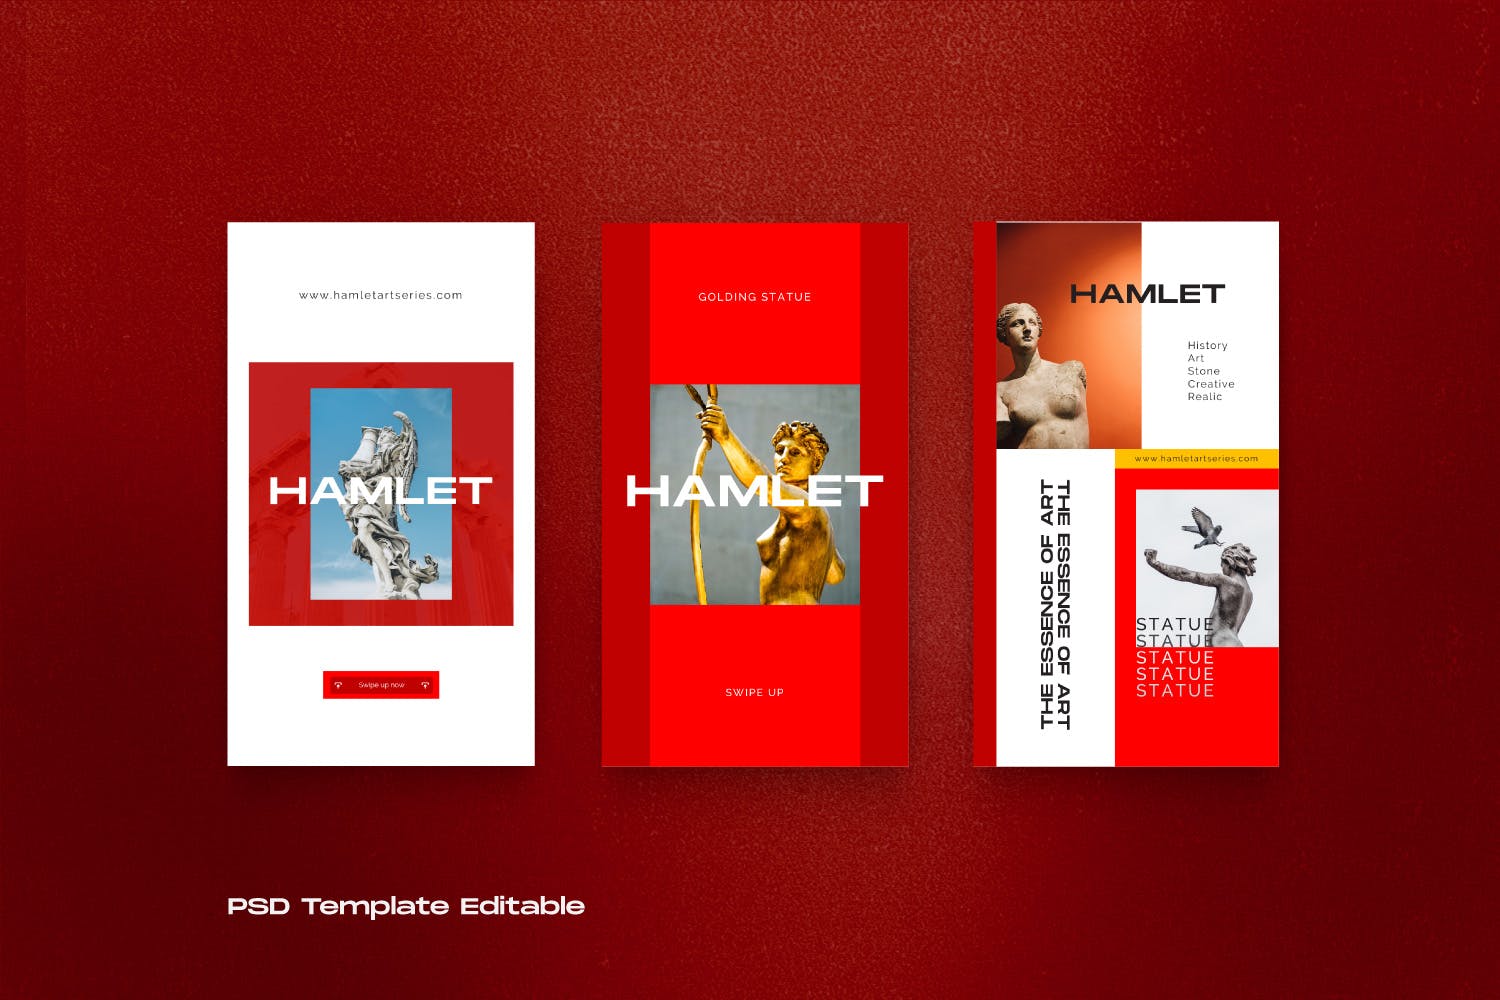 红色设计风格Instagram贴图&品牌故事设计素材包v2 HAMLET PACK 2 – Instagram Template + Stories插图(5)